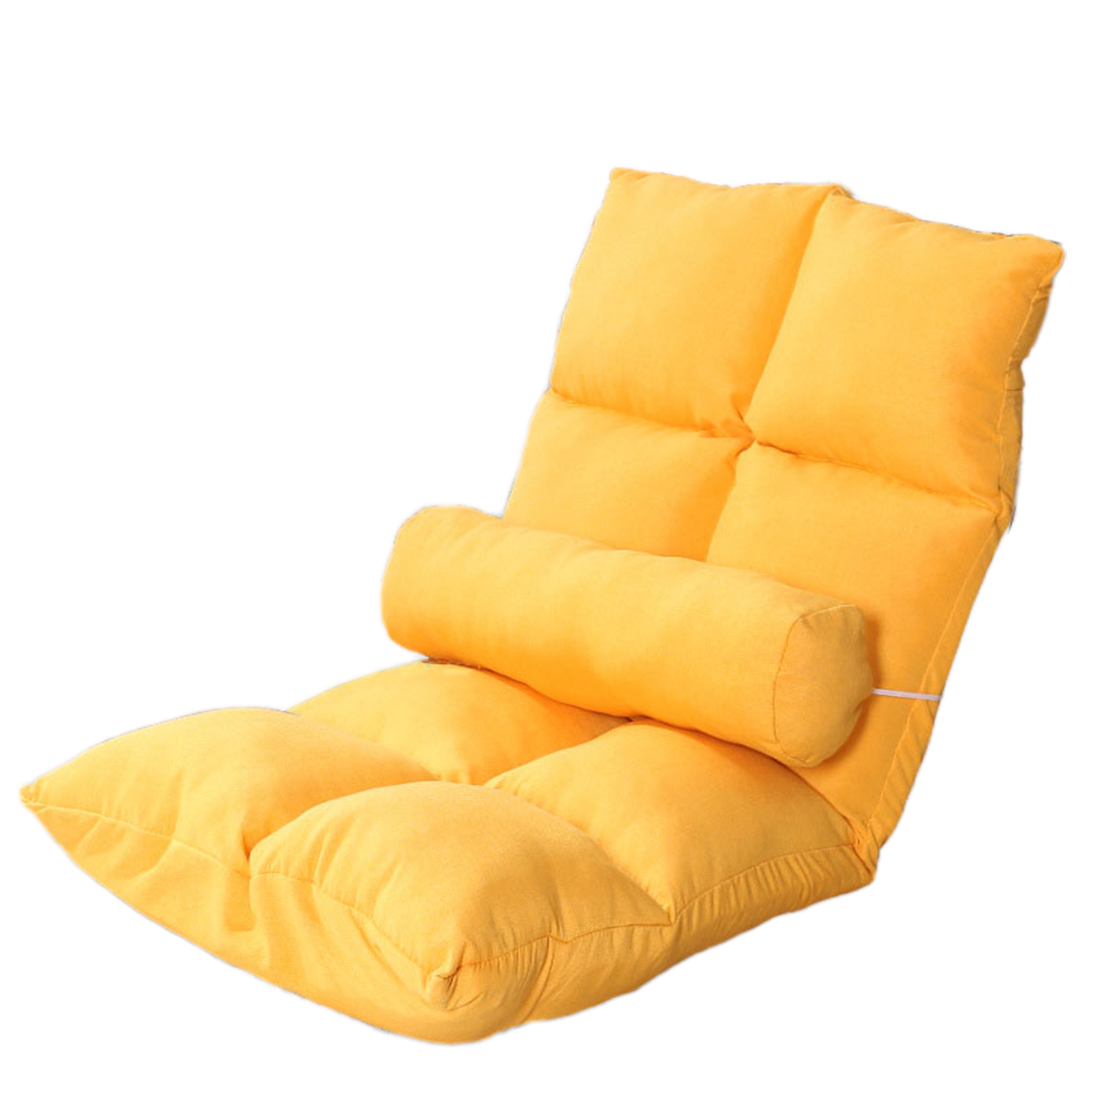 8 plaid linen orange yellow ( send waist pillow )